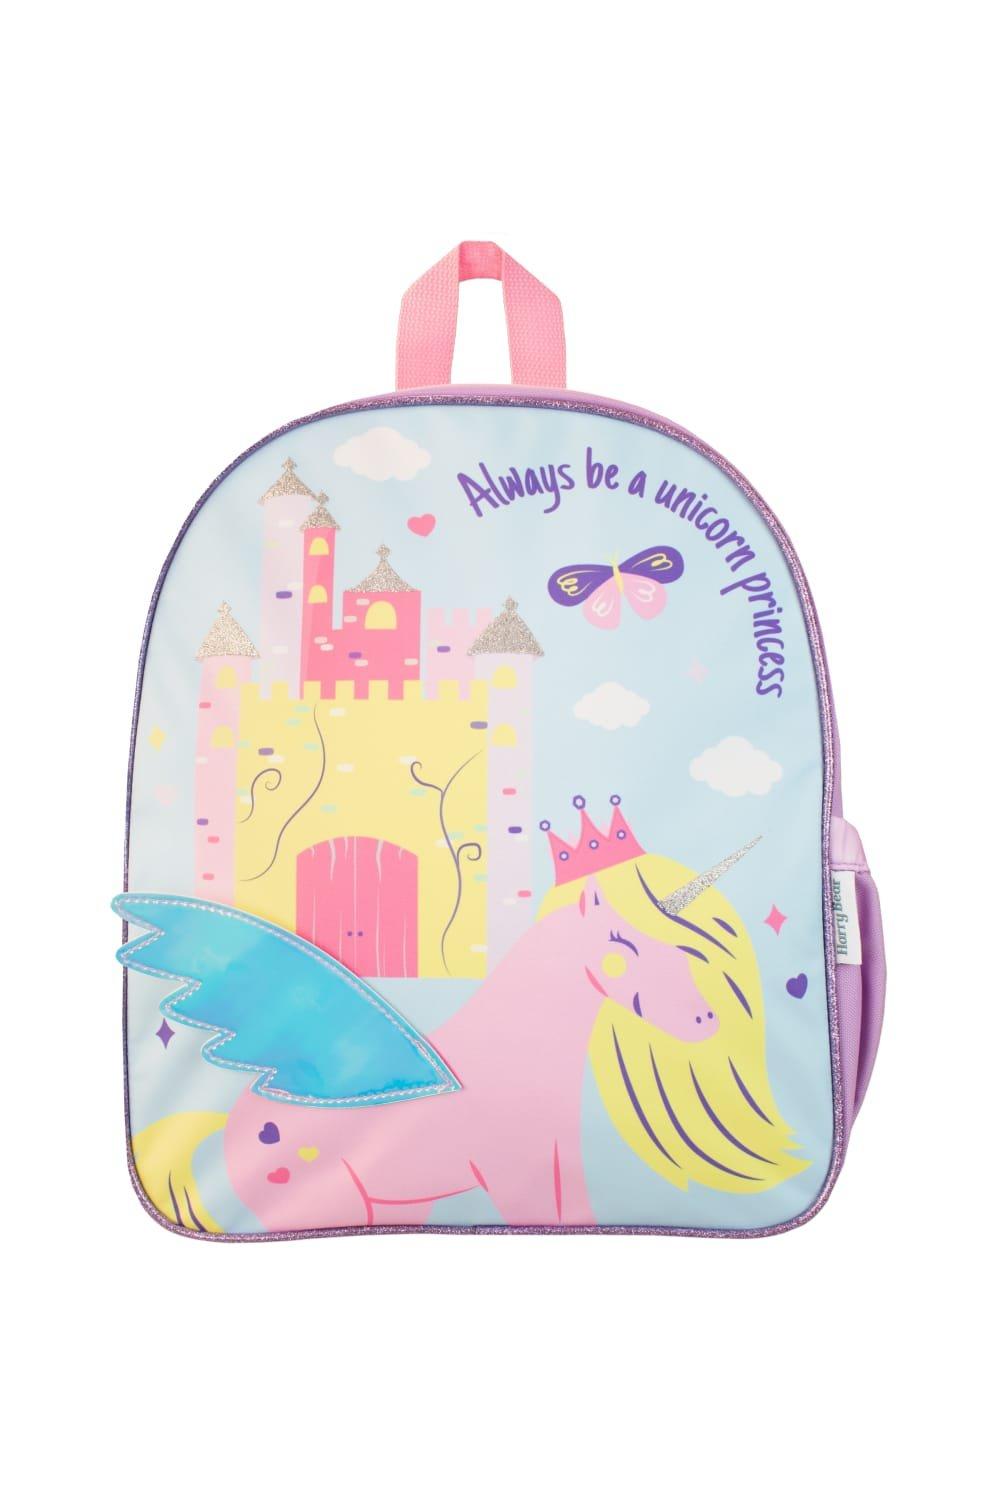 Волшебный рюкзак принцессы-единорога Harry Bear, мультиколор рюкзак детский принцессы 1 шт